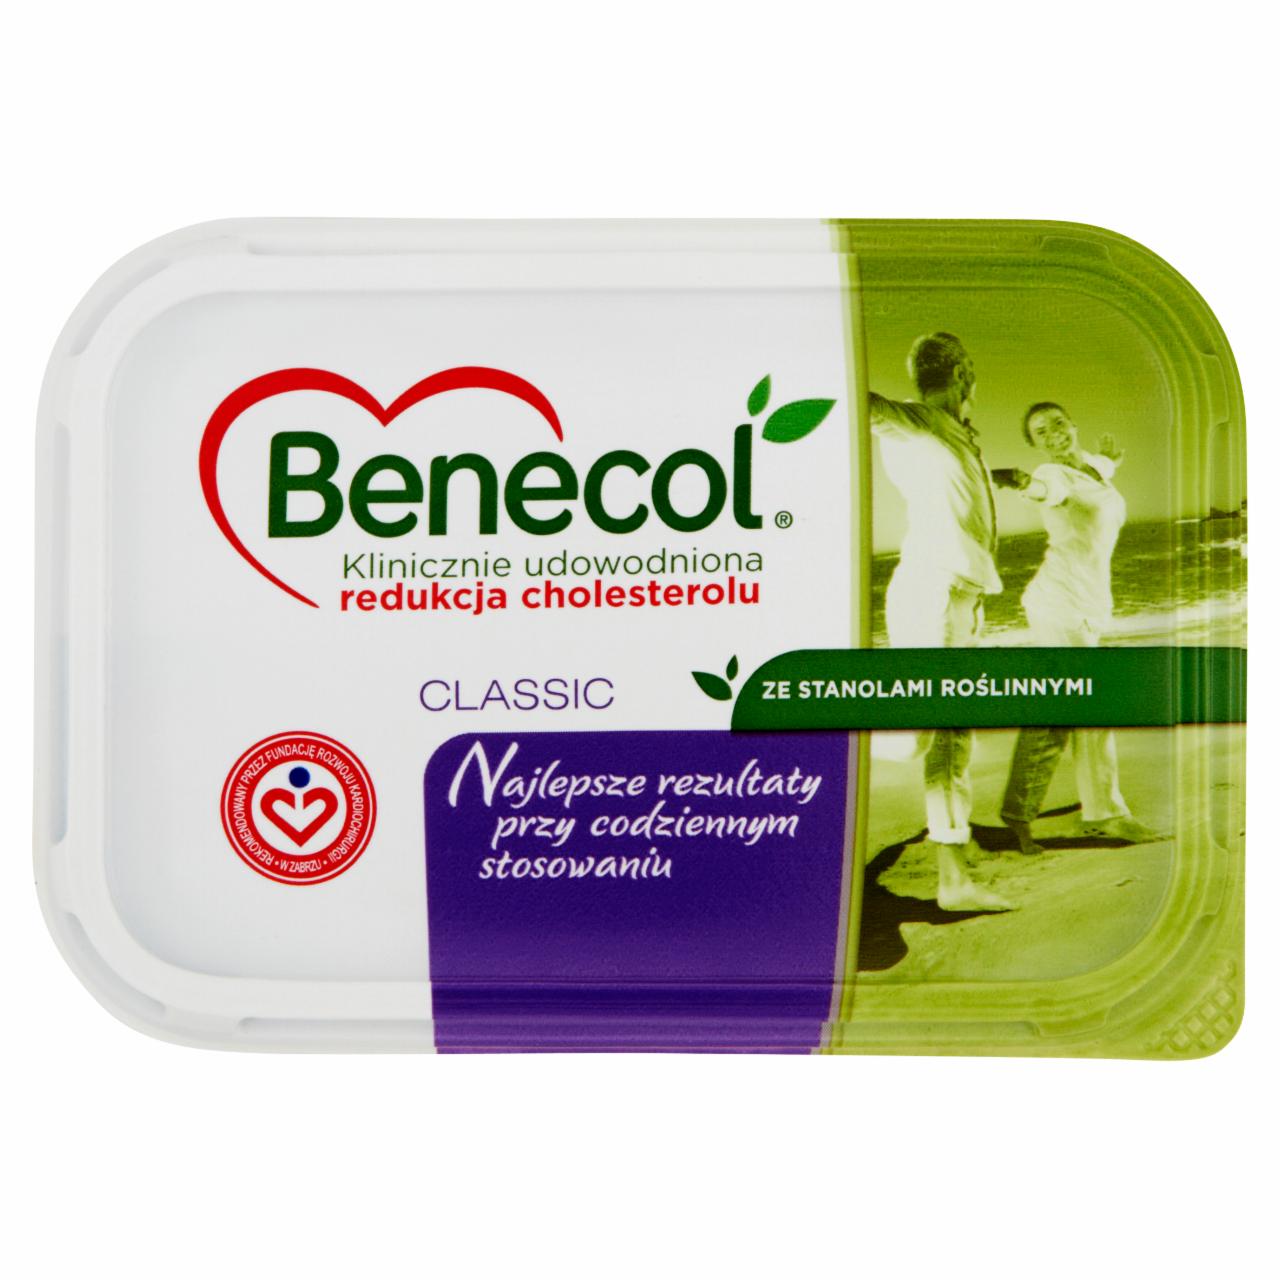 Zdjęcia - Benecol Classic ze stanolami roślinnymi Margaryna 225 g